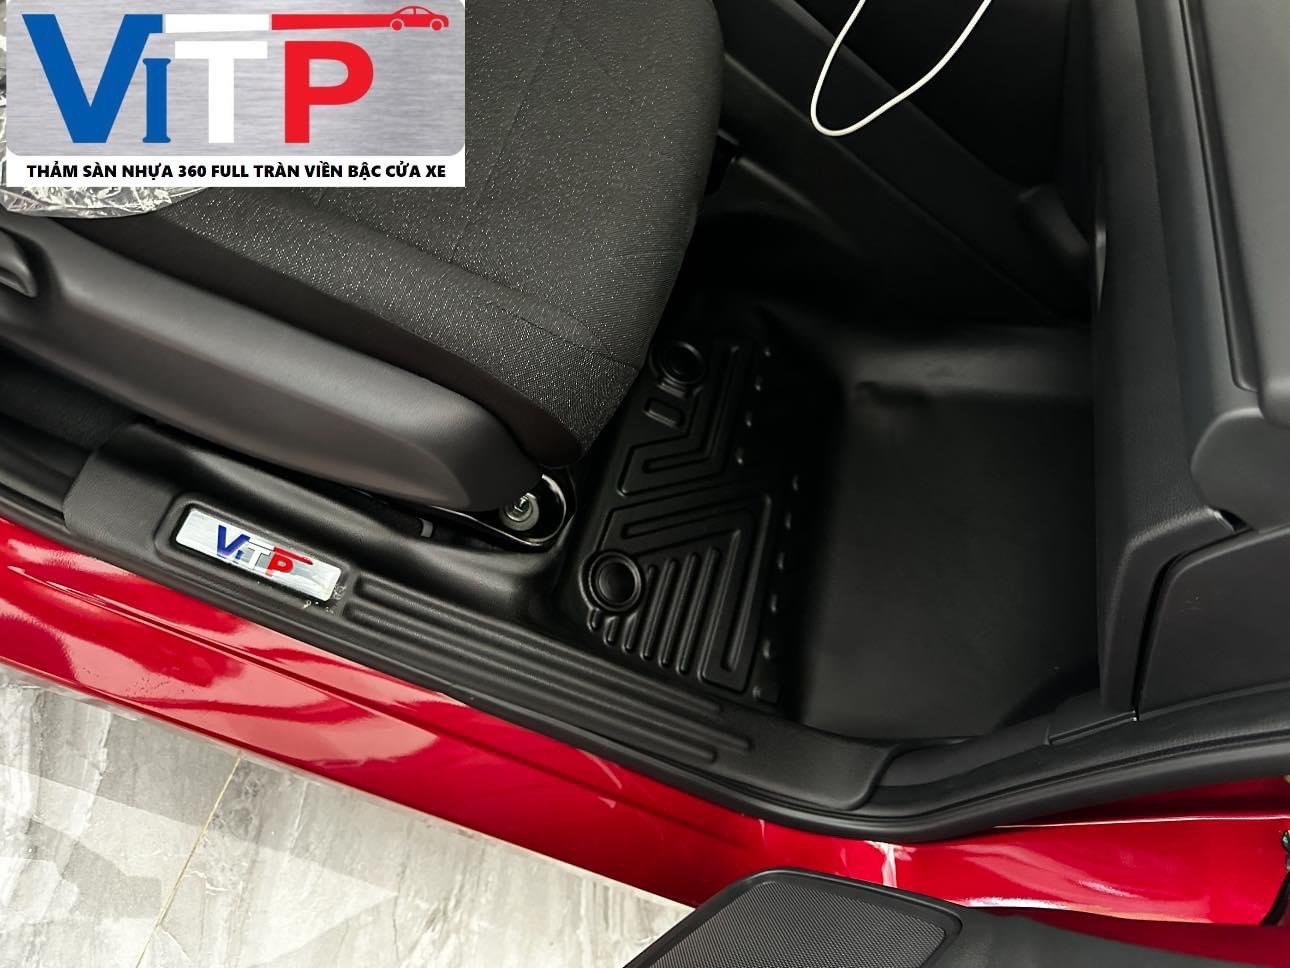 Thảm sàn ViTP Nhựa 360 Full Tràn Viền Bậc Cửa Xe Dành Cho Honda HRV 2022